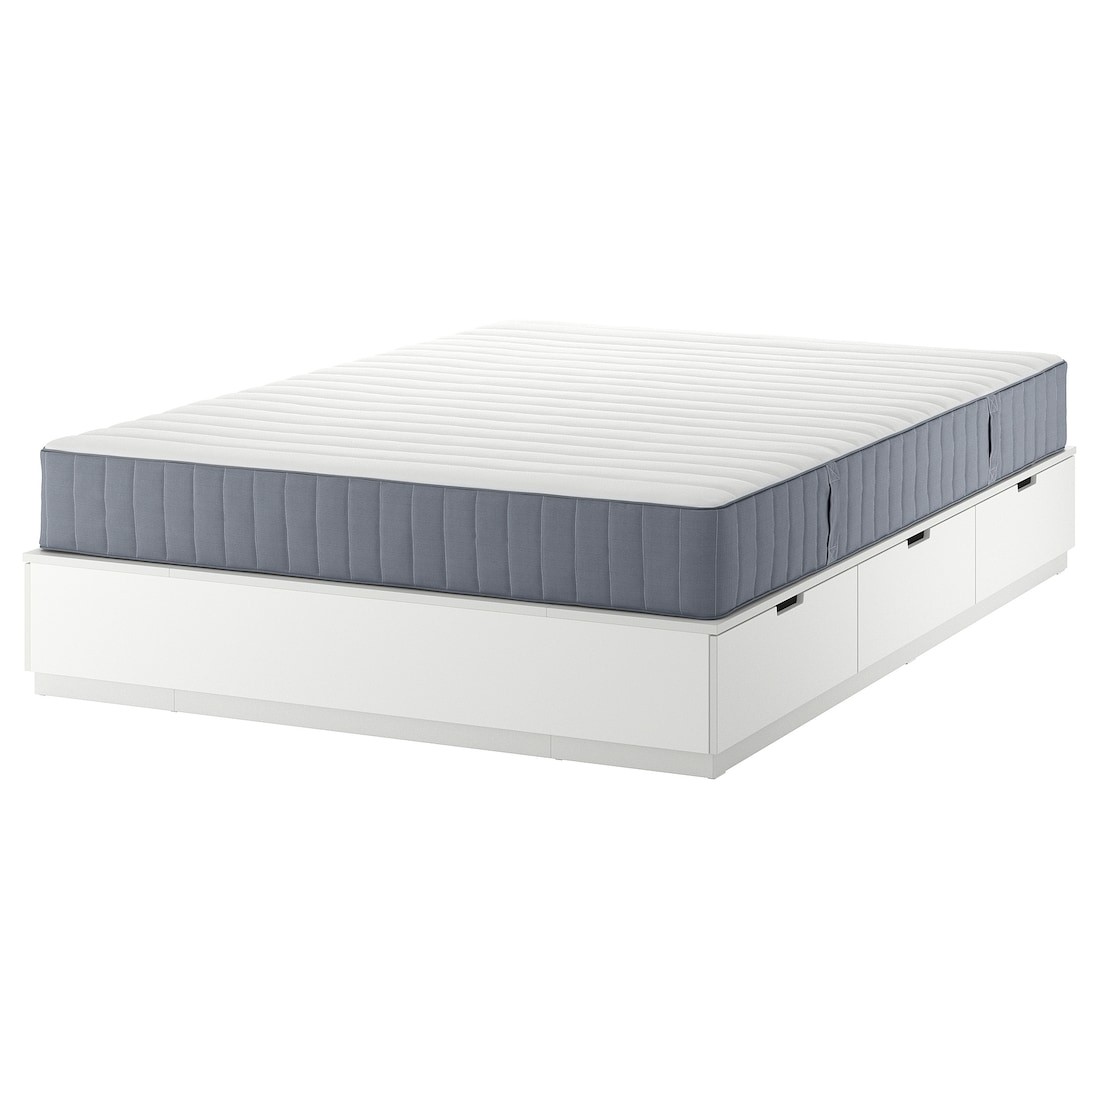 NORDLI Ліжко з контейнером і матрацом, білий / Valevåg твердий, 160x200 см